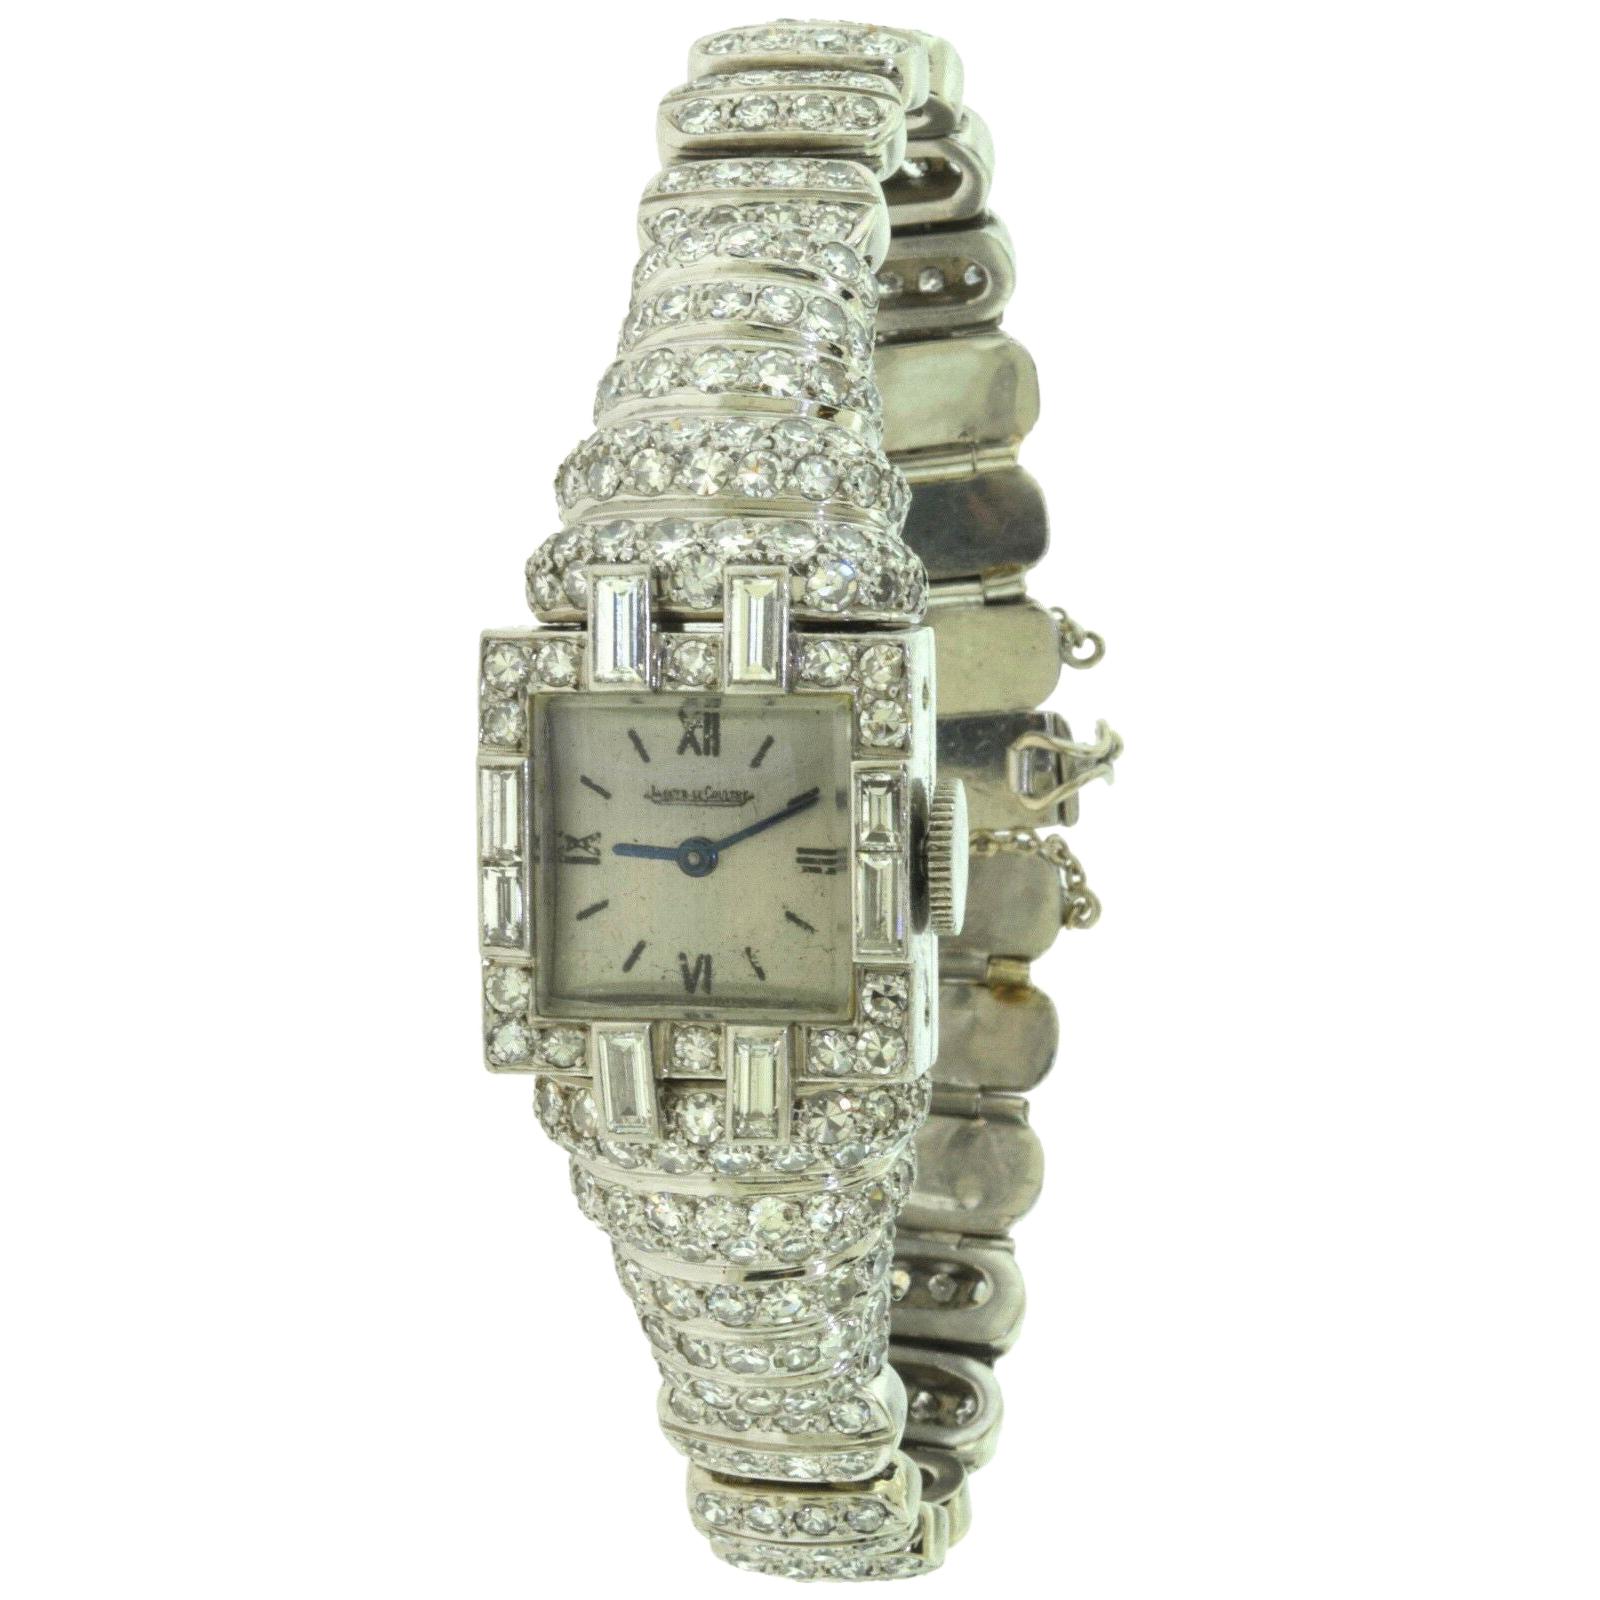 Vintage Jaeger-LeCoultre Platinum Diamond-Set Bracelet Watch